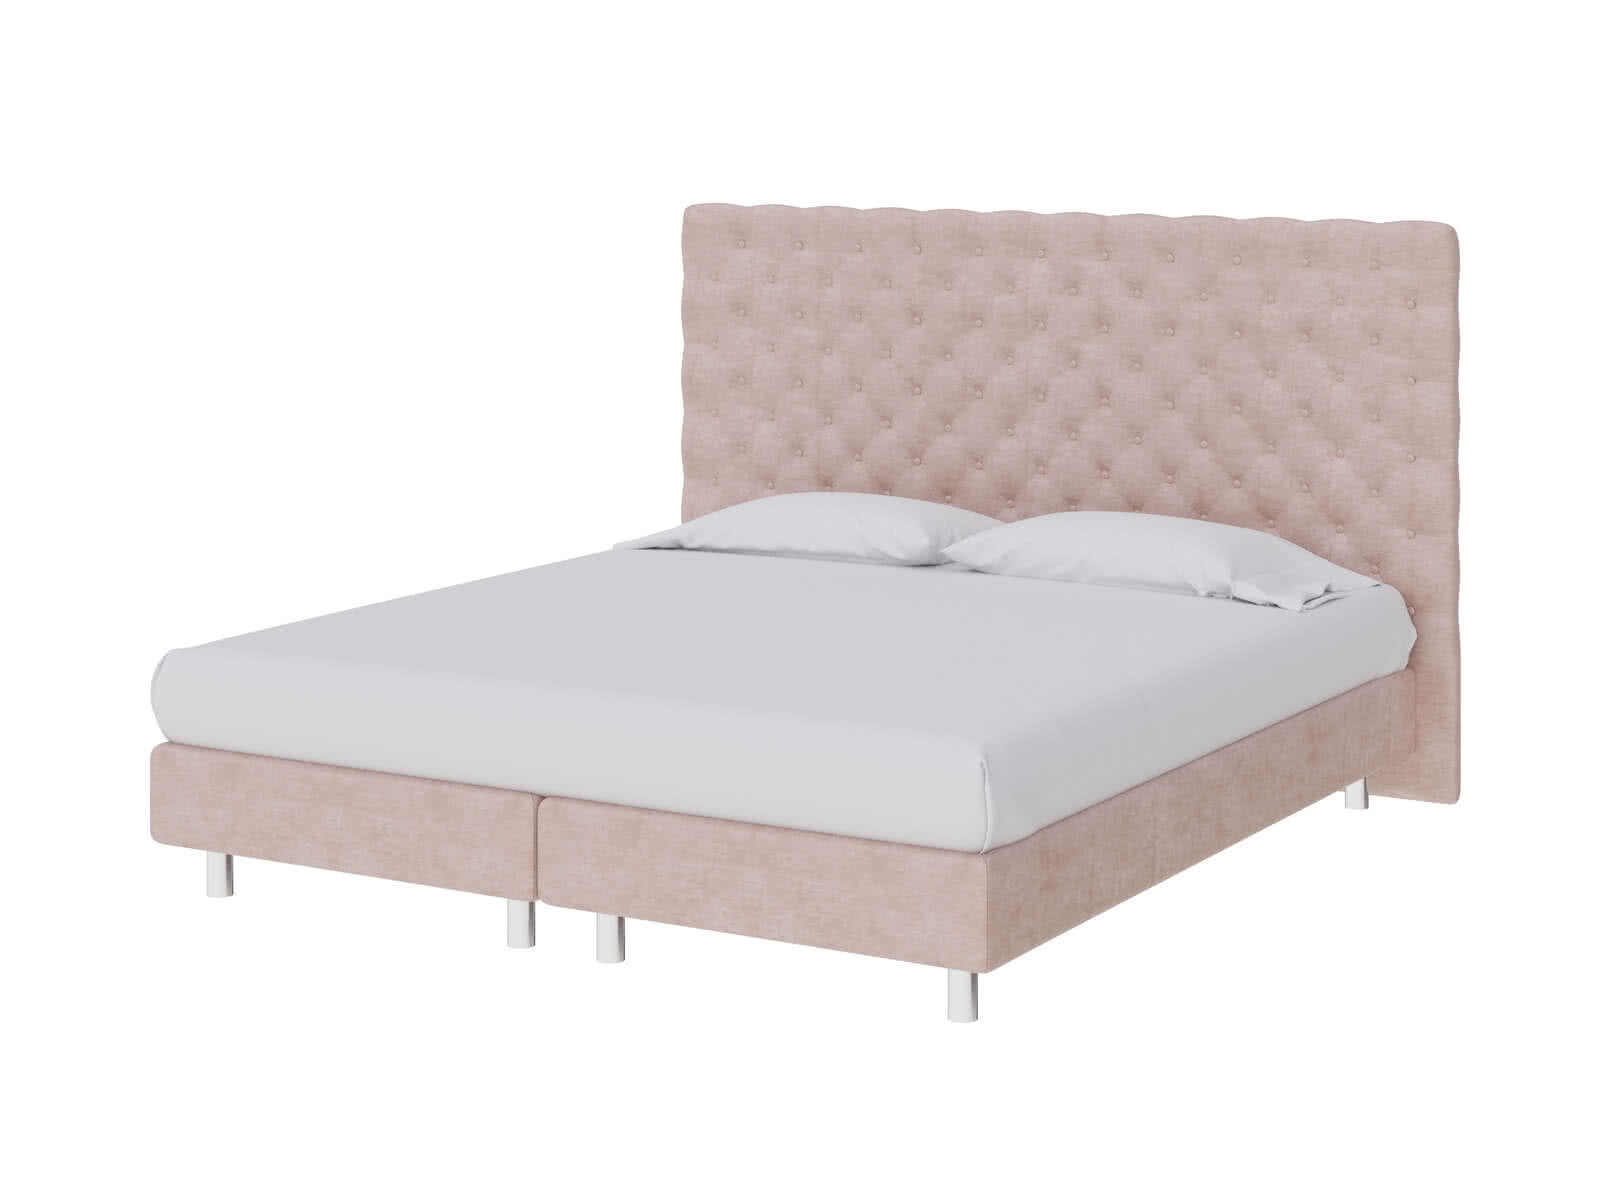 Кровать ProSon Europe Paris Elite 140 х 200 см Лофти Тауп от производителя — цены фабрики, доставка